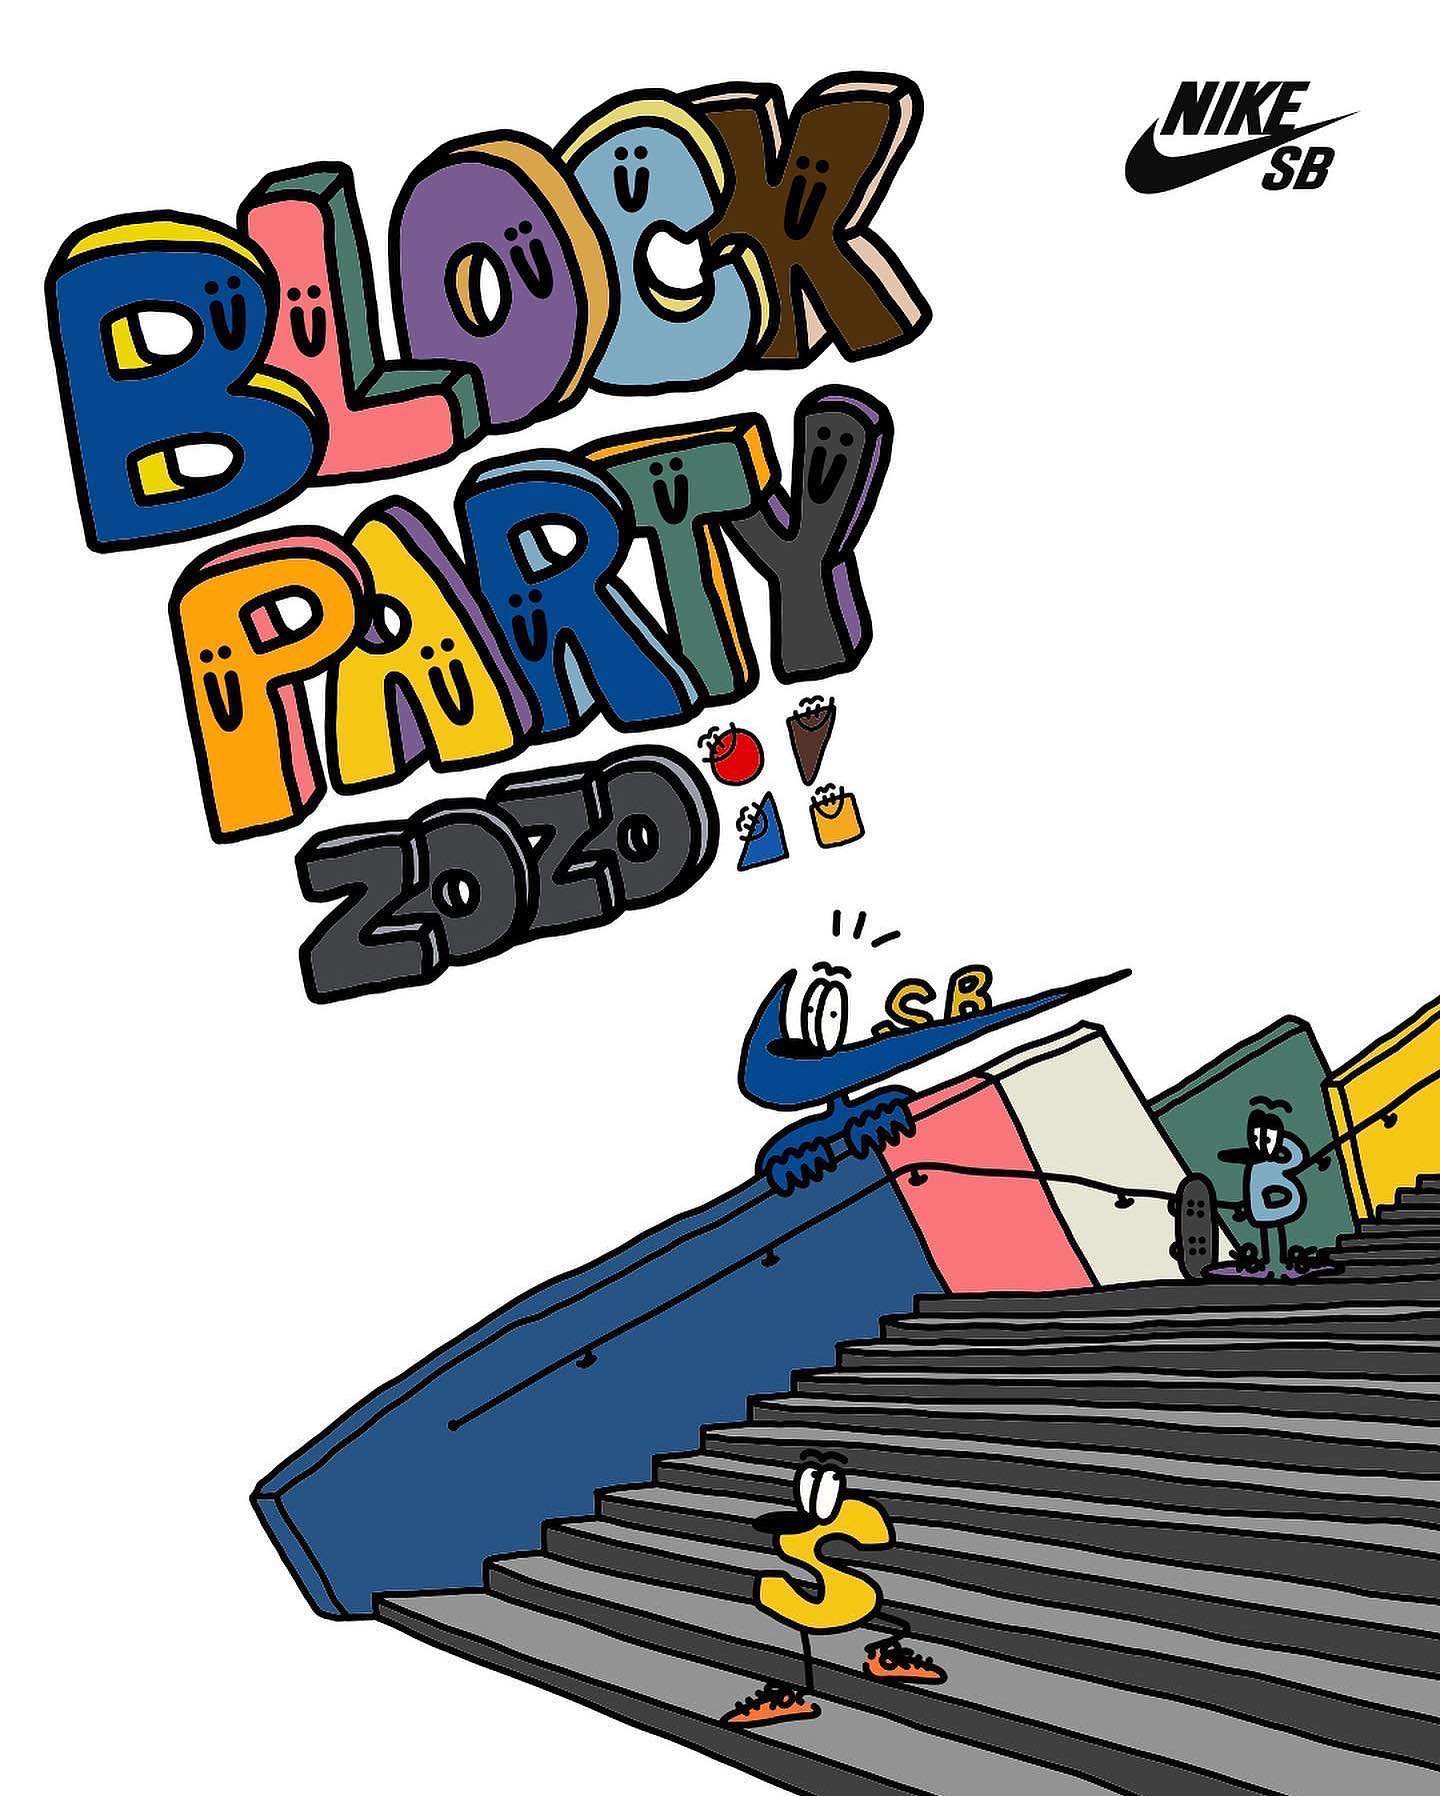 Posted @withregram • @nikesbdojo NIKE SB Blazer Coast Tour ”Block Party” supported by ZOZO歴史に残る日。千葉ローカルのレジェンダリーストリートスポットをスケートに全面解放！Nike SB Japan Team のツアー最終地。ステア、マーブルレッジをノーキックアウトでセッション！千葉ローカルDJを迎えたBlock Partyの中でスケートボーディングを忘れられない記憶に。4/24にはジャムコンテスト開催。イベントへの参加・観戦はもちろん、ジャムコンテストへの一般参加も！スケートボードを忘れずに!!【BLOCK PARTY DATE】︎ 4/23 (Sat)　AM11:00 ~ PM 21:00︎ 4/24 (Sun)　AM11:00 ~ PM 22:00【PLACE】ワールドビジネスガーデン 屋外芝生広場 WORLD BUSINESS GARDEN, MAKUHARI 〒261-7101 千葉県千葉市美浜区中瀬２丁目６−１JR海浜幕張駅から徒歩約5分5 min walk from Kaihin Makuhari Station【FEES】無料 | FREE【CONTEST: ZOZO OPEN】︎ 開催日時 4/24 (Sun) : PM17:30 ~ PM20:30︎ ルール3セクションごとのジャムコンテスト。各セクションごとにウォームアップタイムあり、コンテストはジャム方式。各セクションごとにプライズあり。【雨天時の場合】23日、24日共に雨天の場合は中止（コンテストの順延なし）※雨天でのコンテスト中止の際は、24日 Nike SB dojoストーリにてお知らせ。【お願い】*イベントへに参加にはNIKE APPでの登録、承認が必要。https://www.nike.com/jp/nike-app 事前のDLと登録を!!@zozotown l @nikesbdojoArt by @yutakaleidoscope